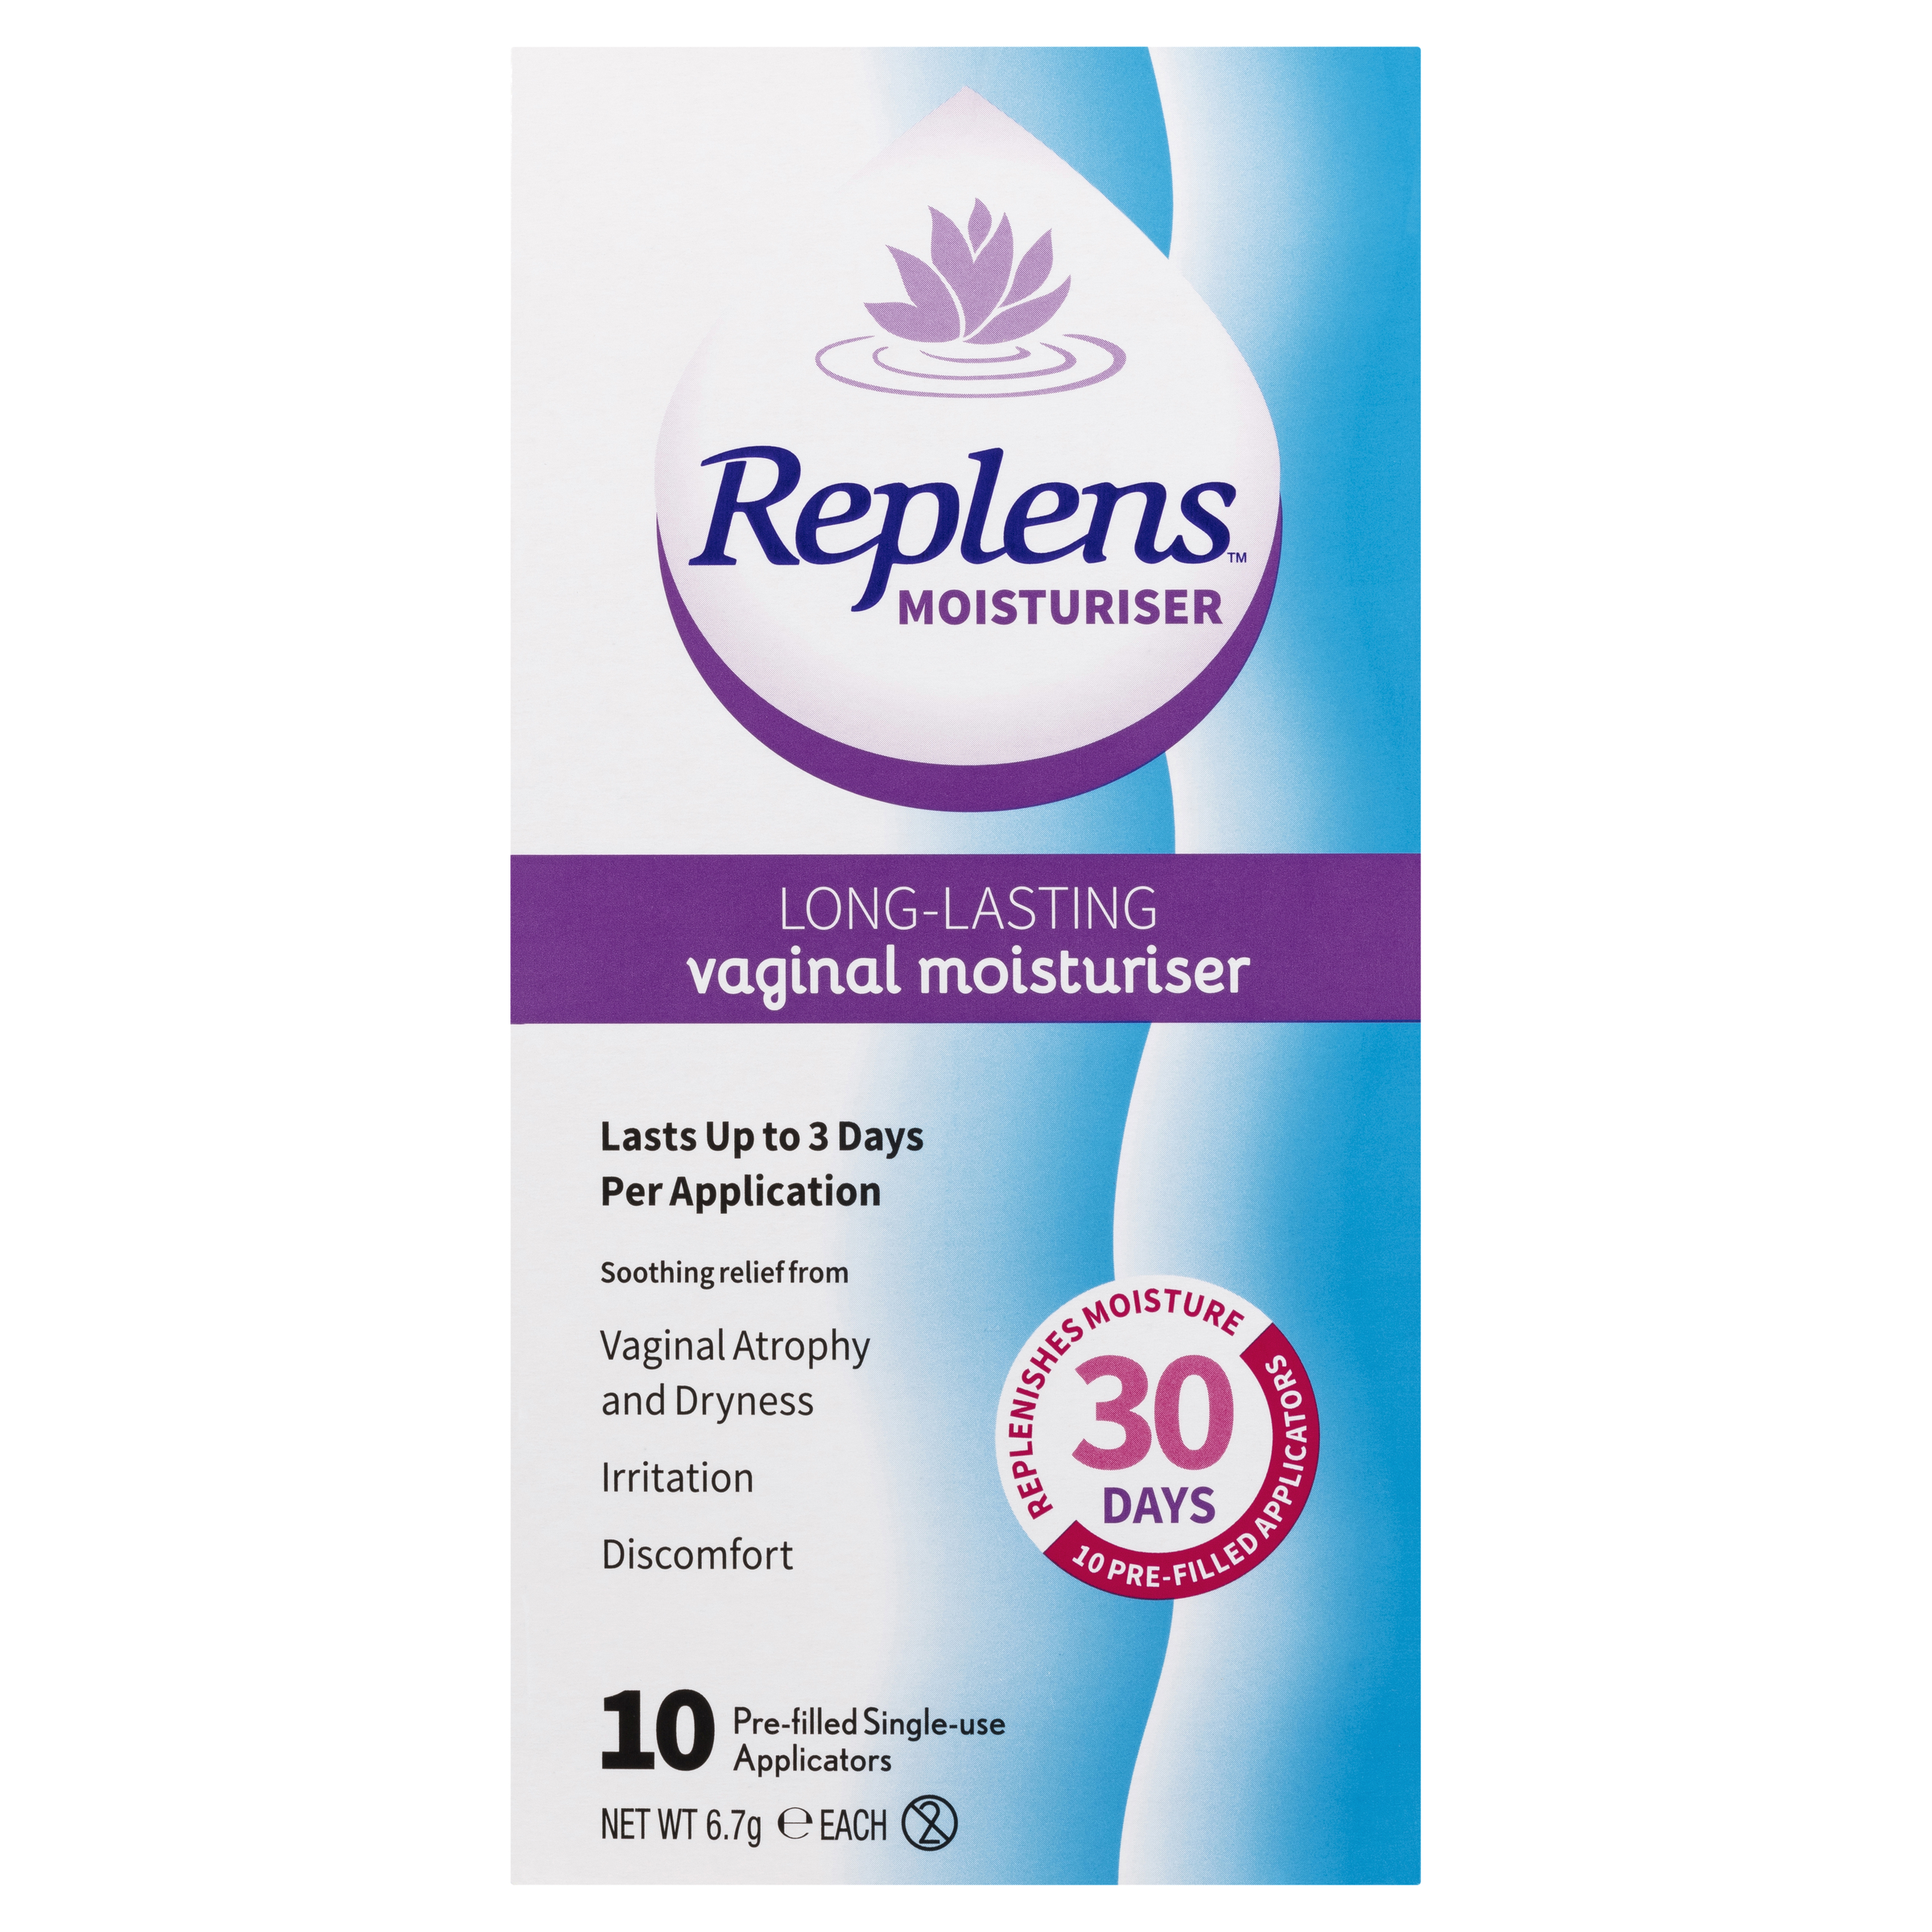 replens-long-lasting-vaginal-moisturiser-10-pack-2